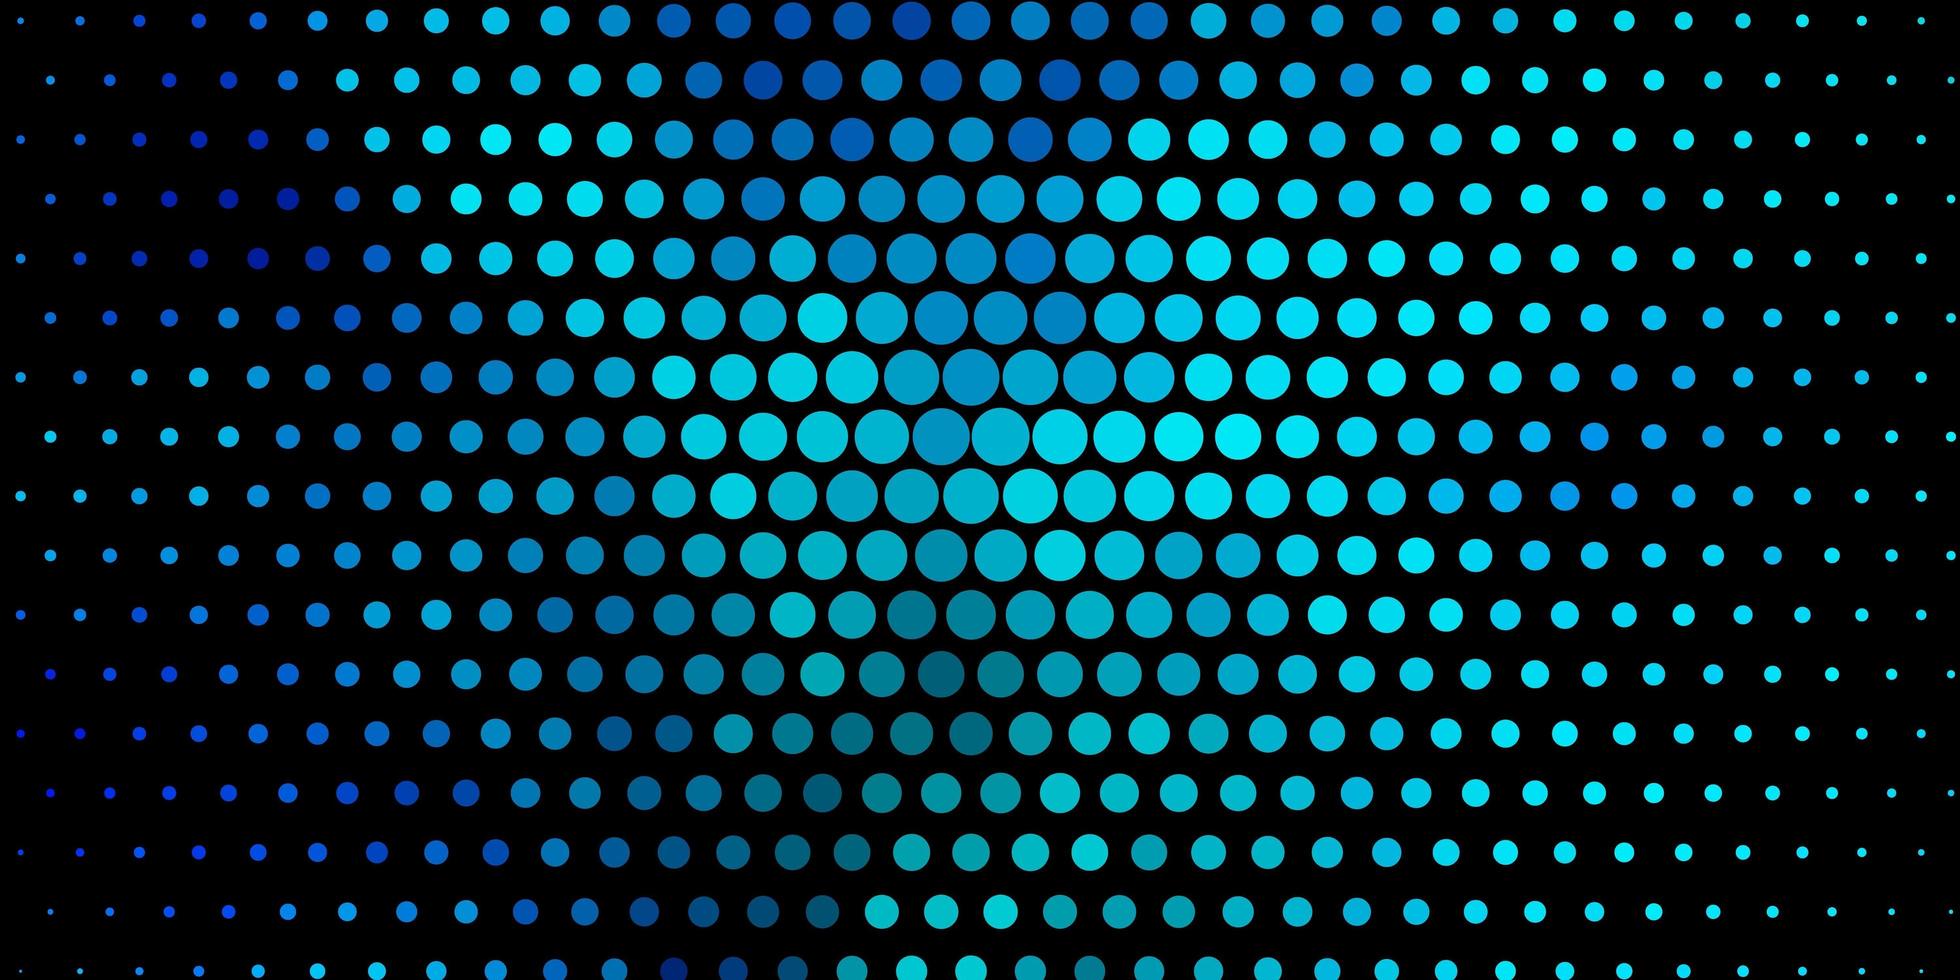 texture vecteur bleu foncé avec des disques paillettes illustration abstraite avec motif de gouttes colorées pour rideaux de fonds d'écran